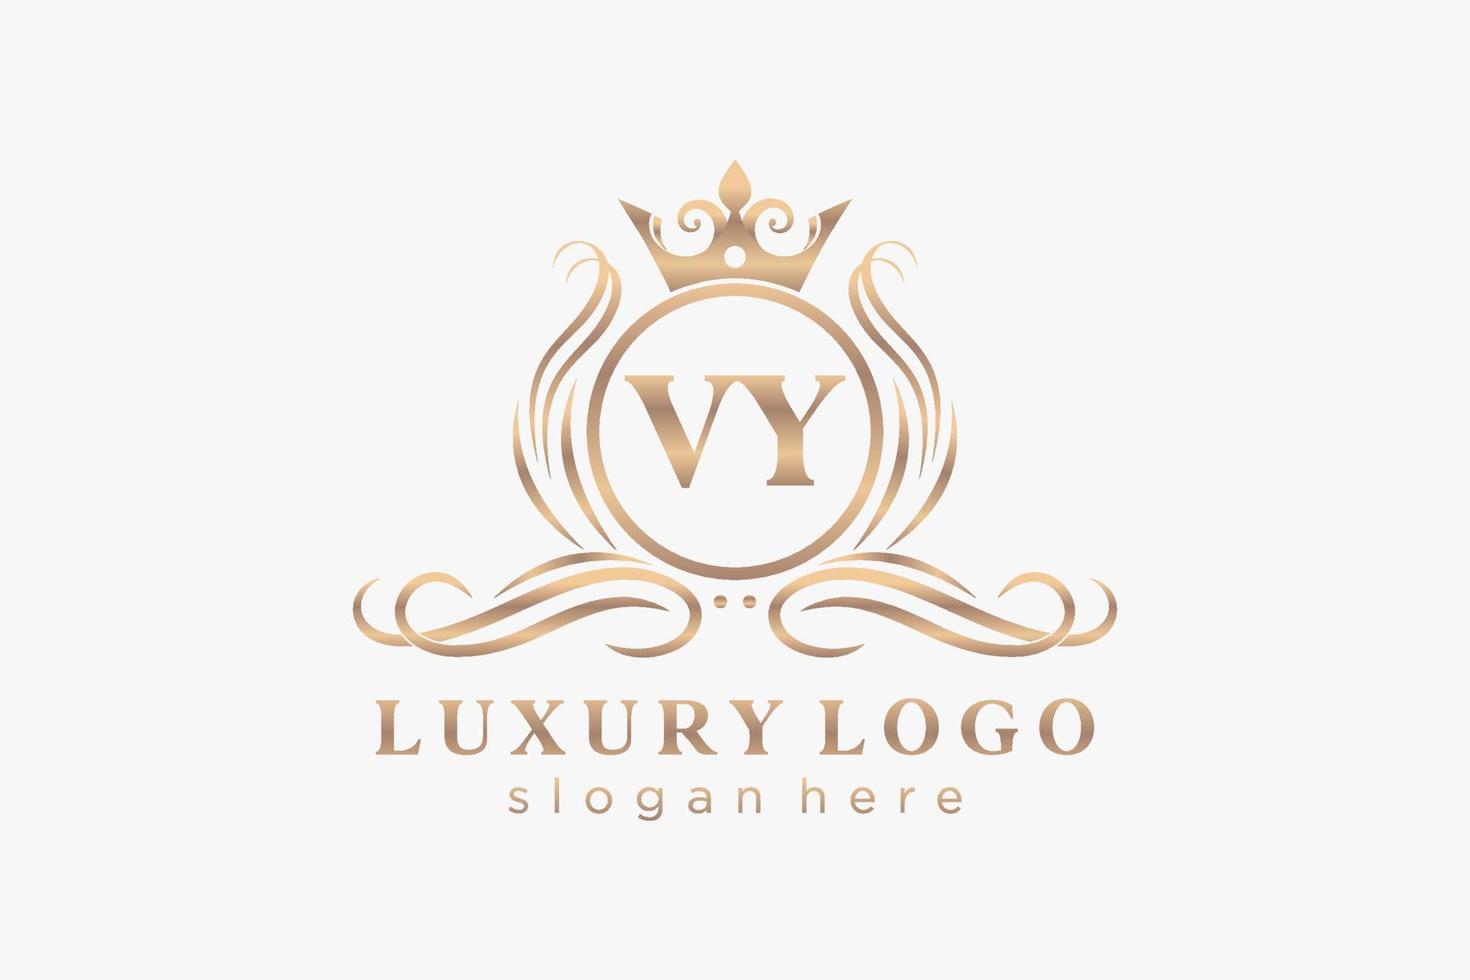 plantilla de logotipo de lujo real de letra vy inicial en arte vectorial para restaurante, realeza, boutique, cafetería, hotel, heráldica, joyería, moda y otras ilustraciones vectoriales. vector